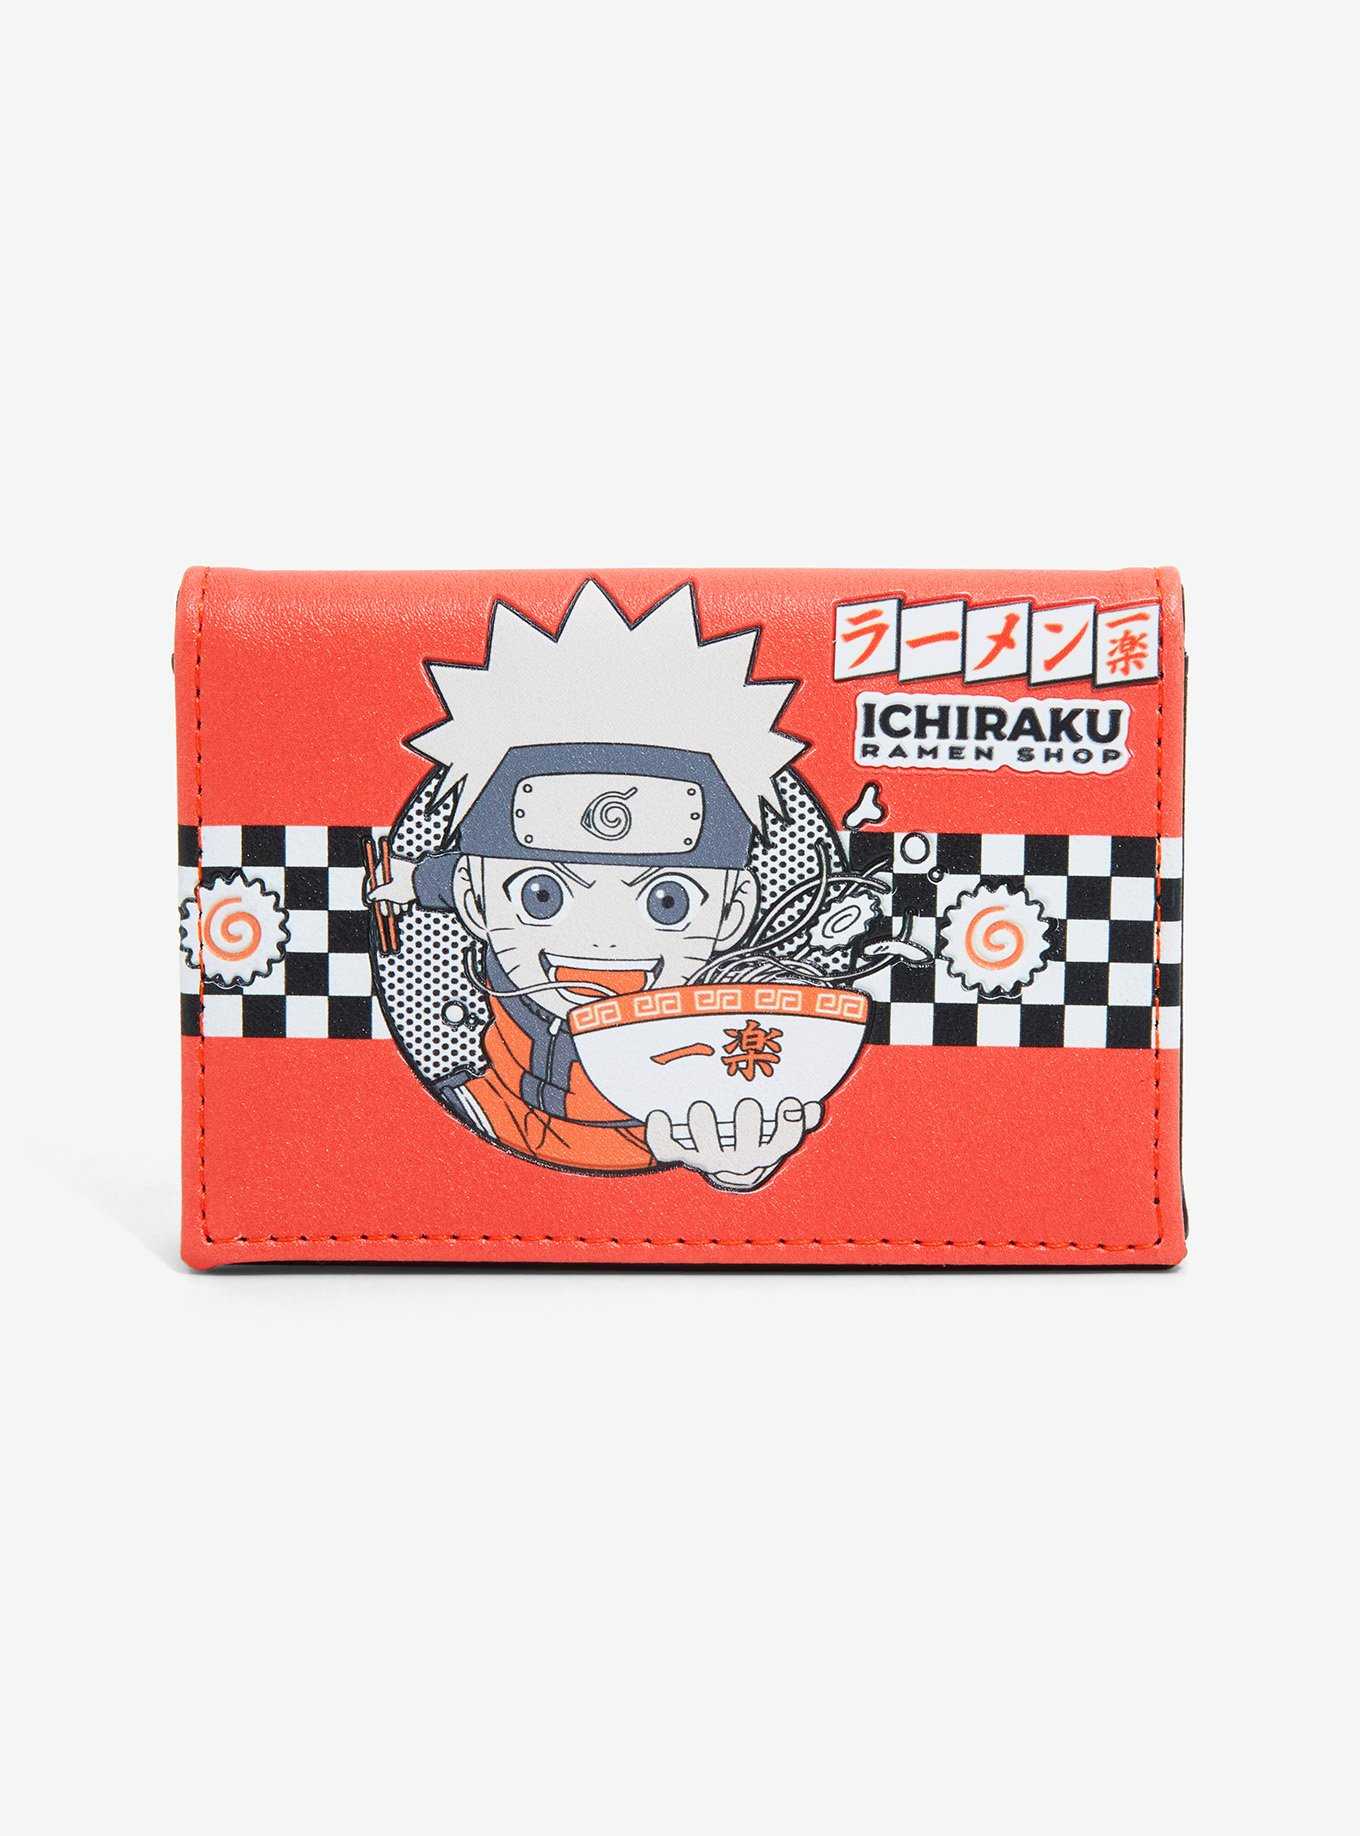 Naruto Shippuden Ichiraku Ramen Shop Wallet - BoxLunch Exclusive, , hi-res